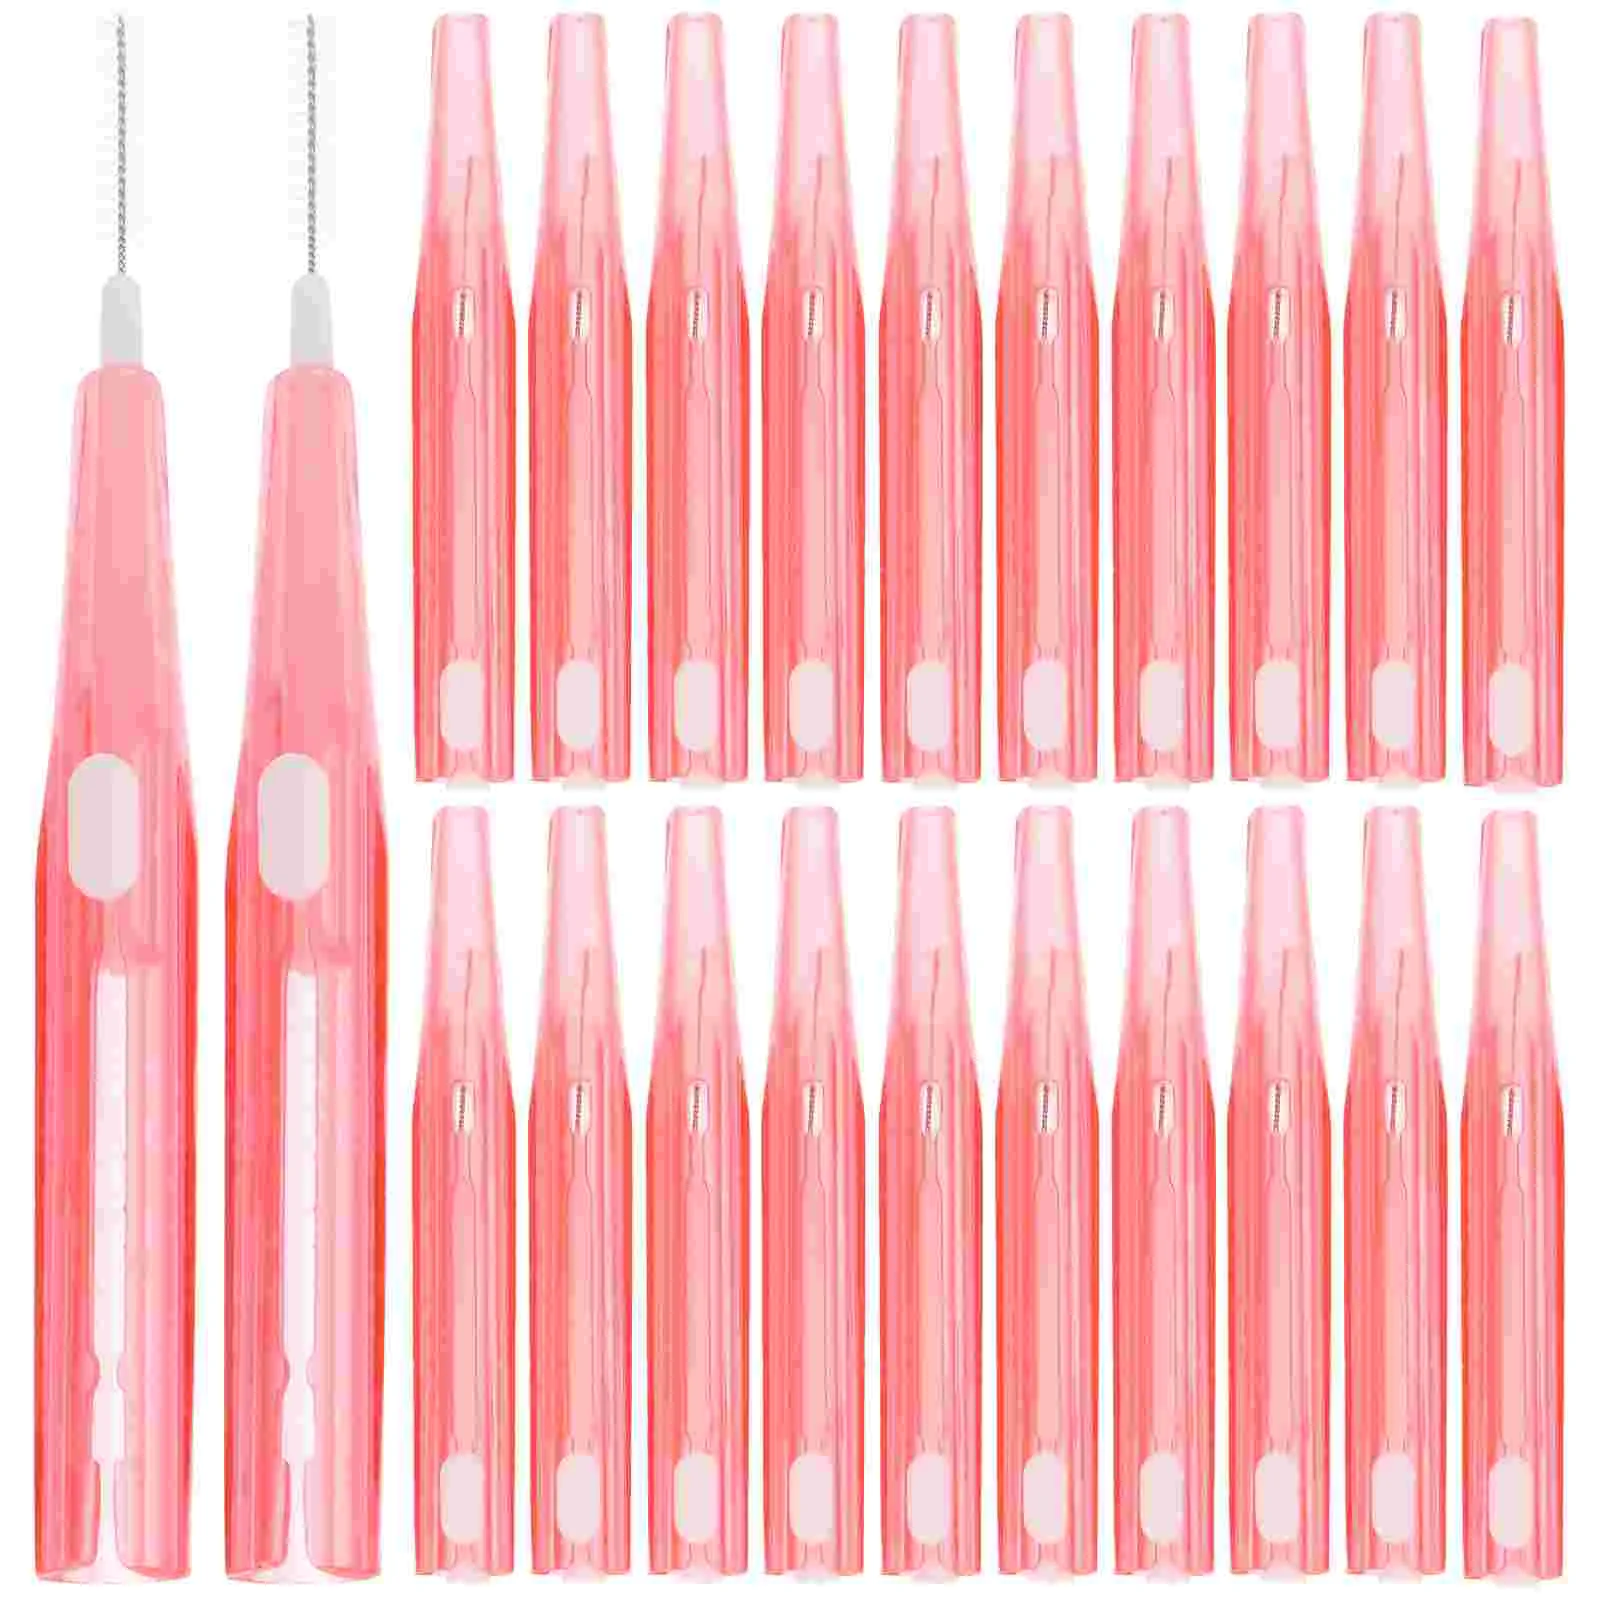 

Interdental Brushes 0.6-1.5mm Toothpick Teeth Cleaning Tools Clean Between Teeth Toothbrush Teeth Oral Hygiene Tool